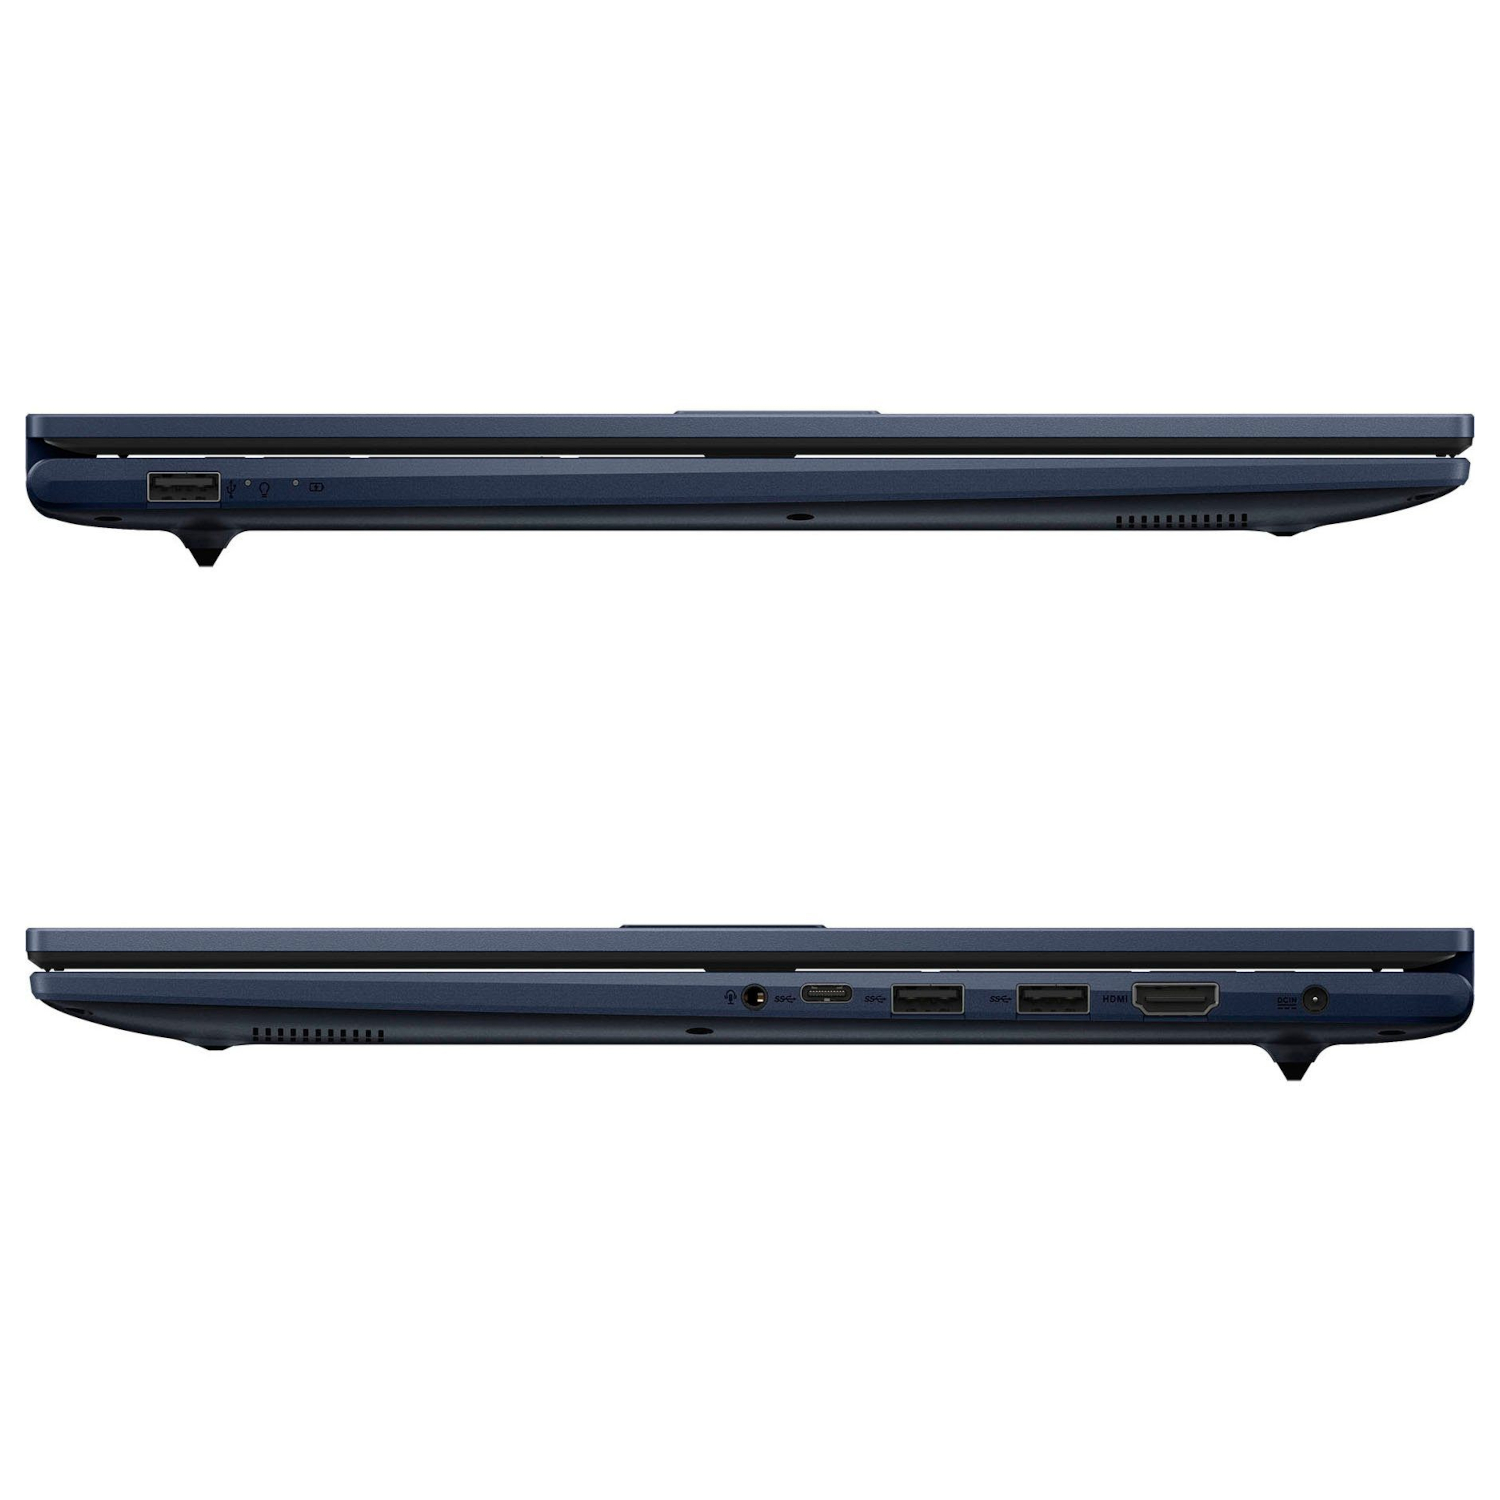 ASUS Vivobook 2021 SSD, Pro, Intel®, Zoll mit GB GB 17,3 fertig X-Serie, 4000 Blue eingerichtet, Display, RAM, 40 Notebook Office Quiet